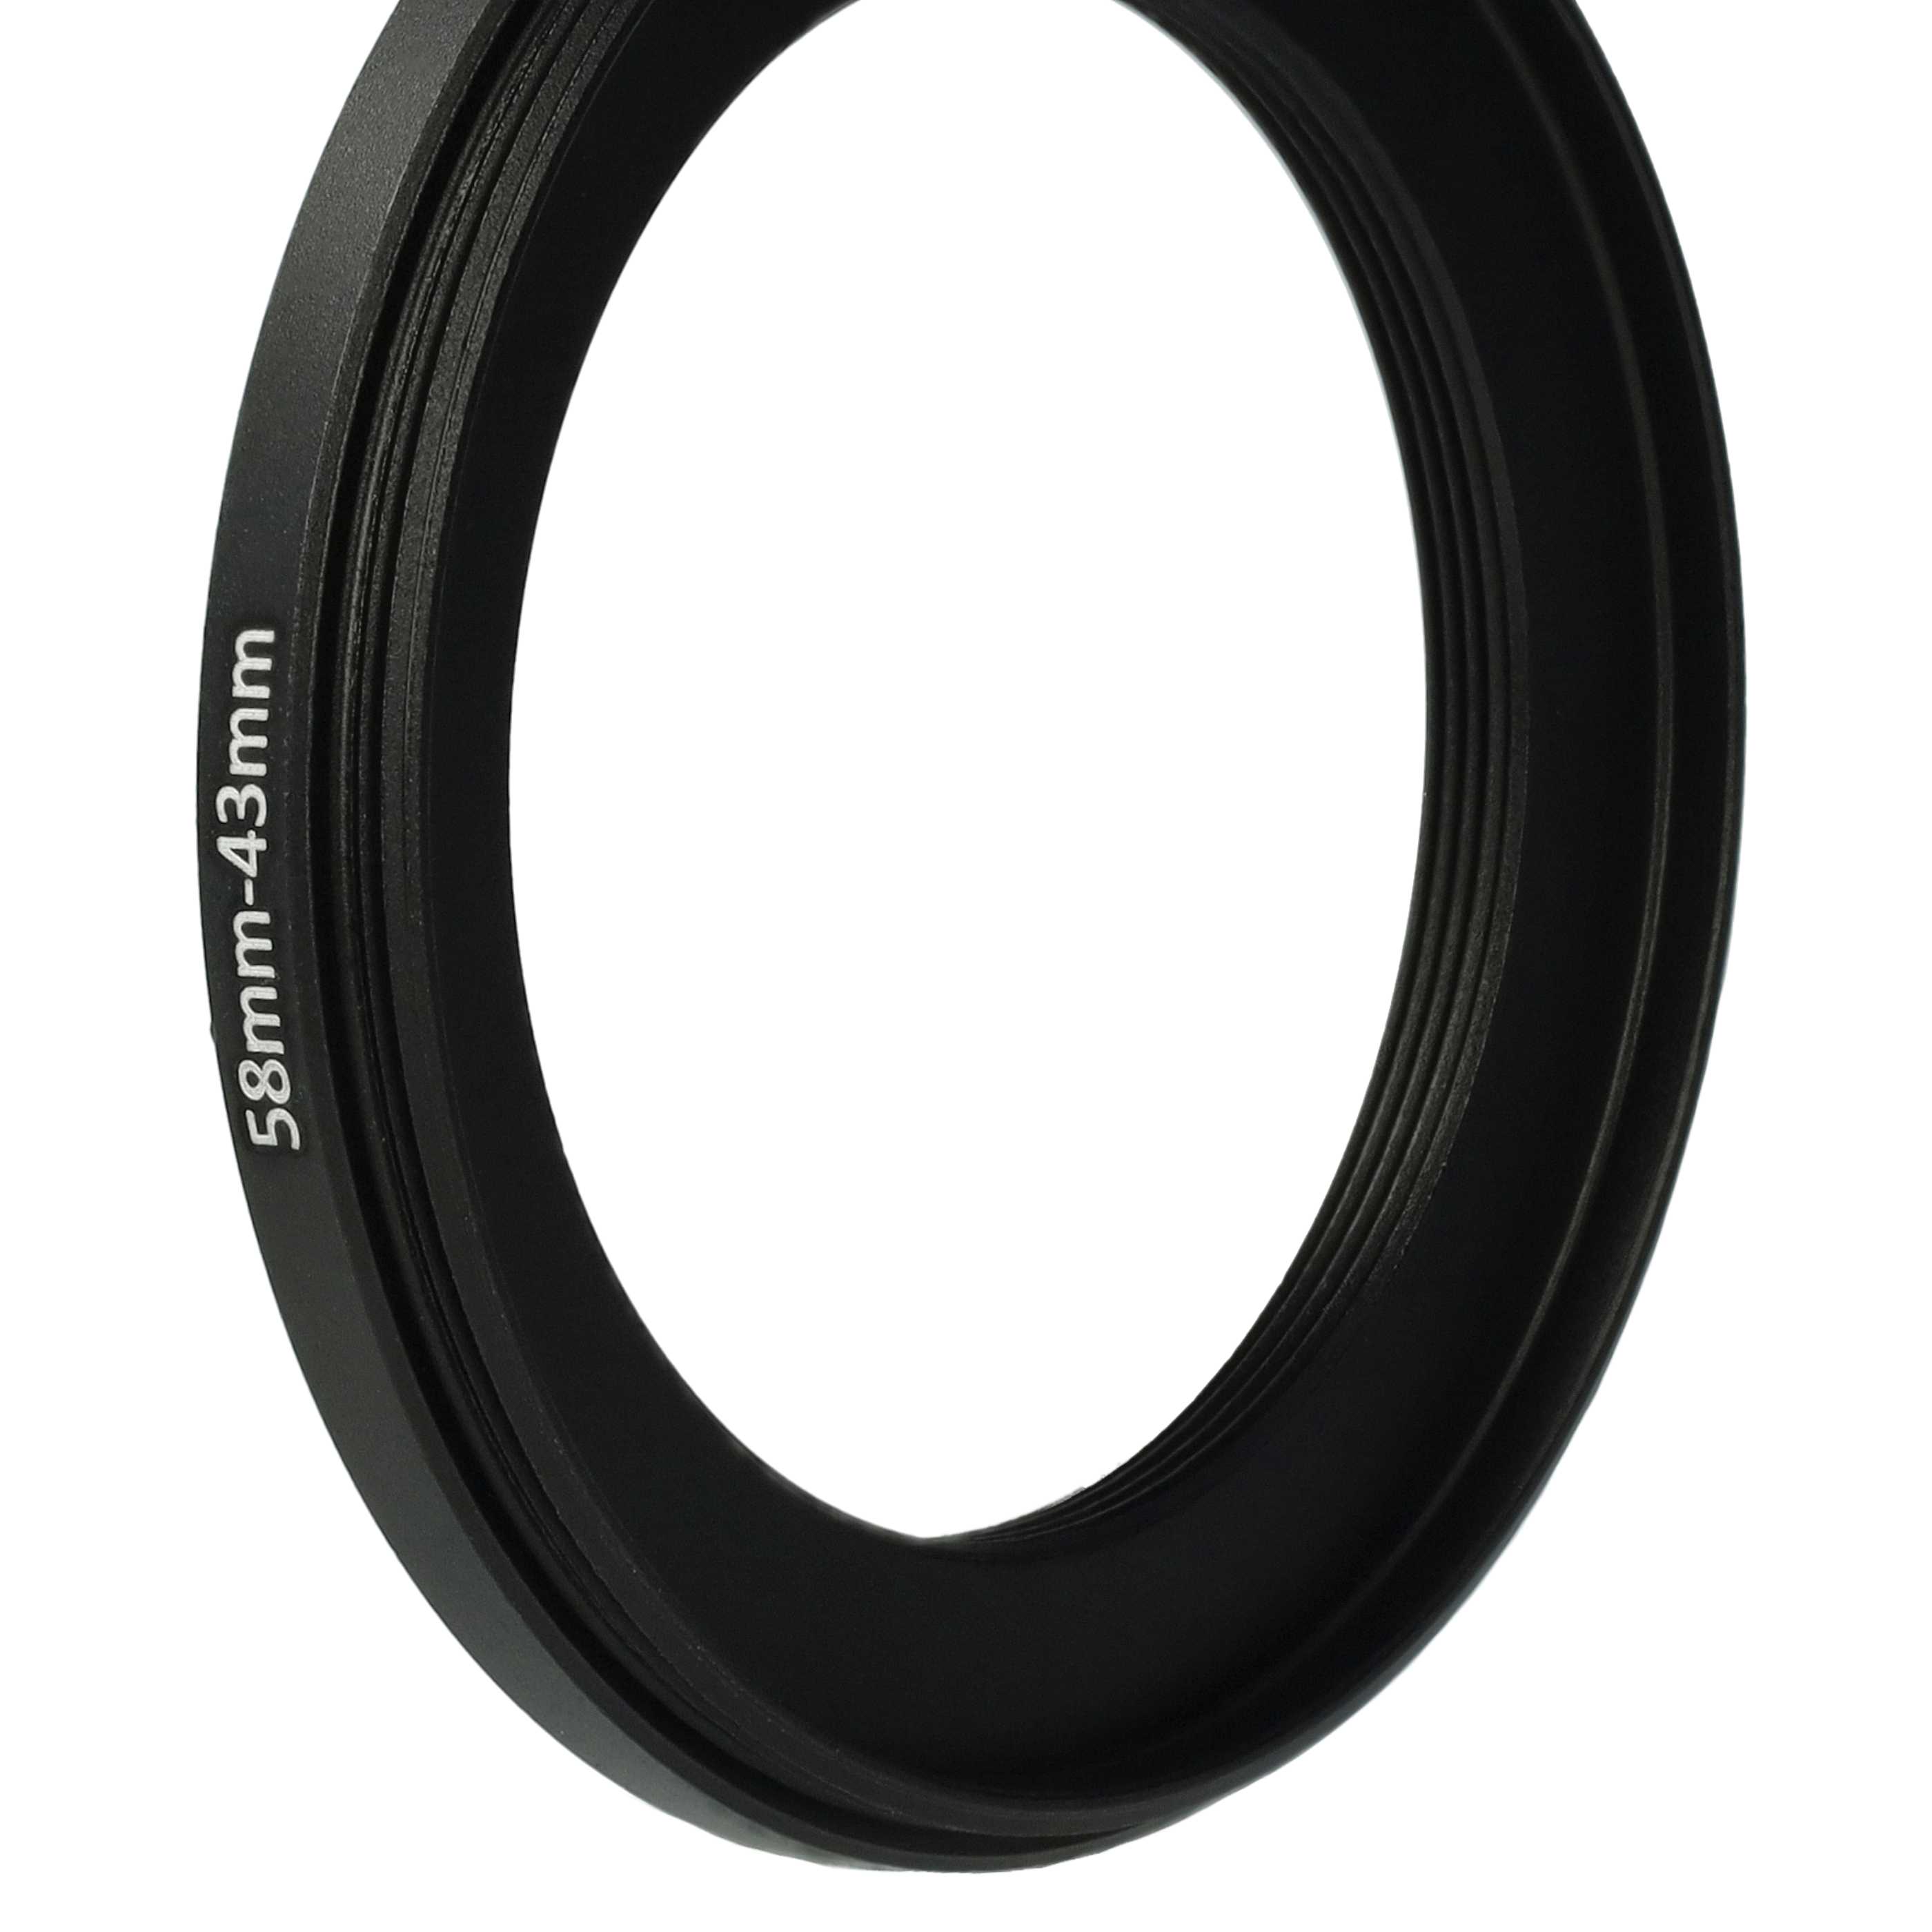 Redukcja filtrowa adapter Step-Down 58 mm - 43 mm pasująca do obiektywu - metal, czarny